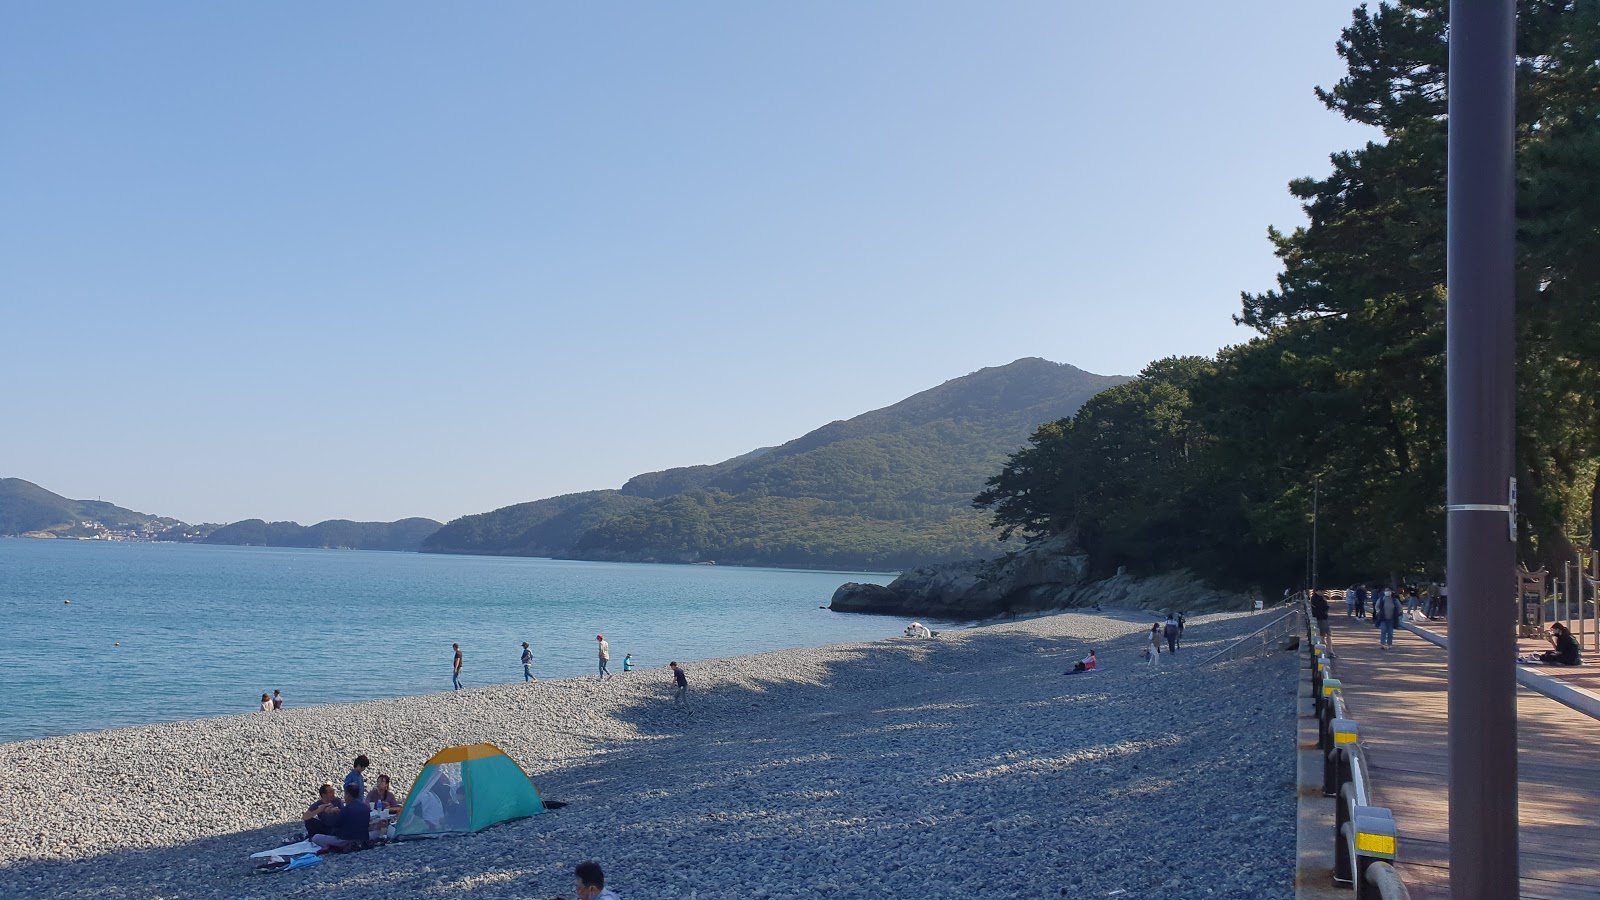 Zdjęcie Yeocha Beach - popularne miejsce wśród znawców relaksu